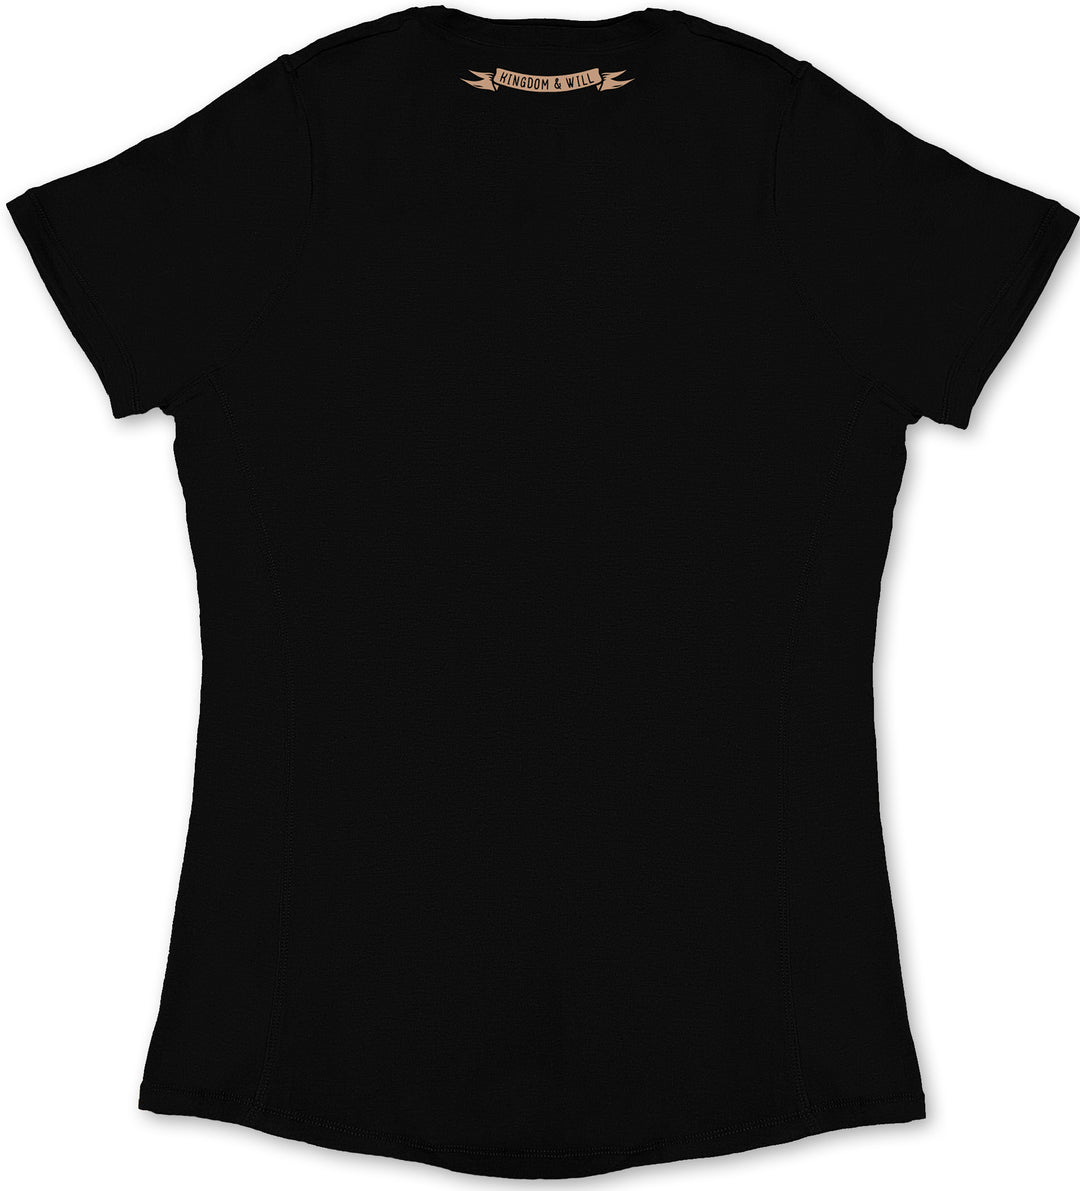 Jeremiah 29:11 Ladies' T-Shirt (Black)